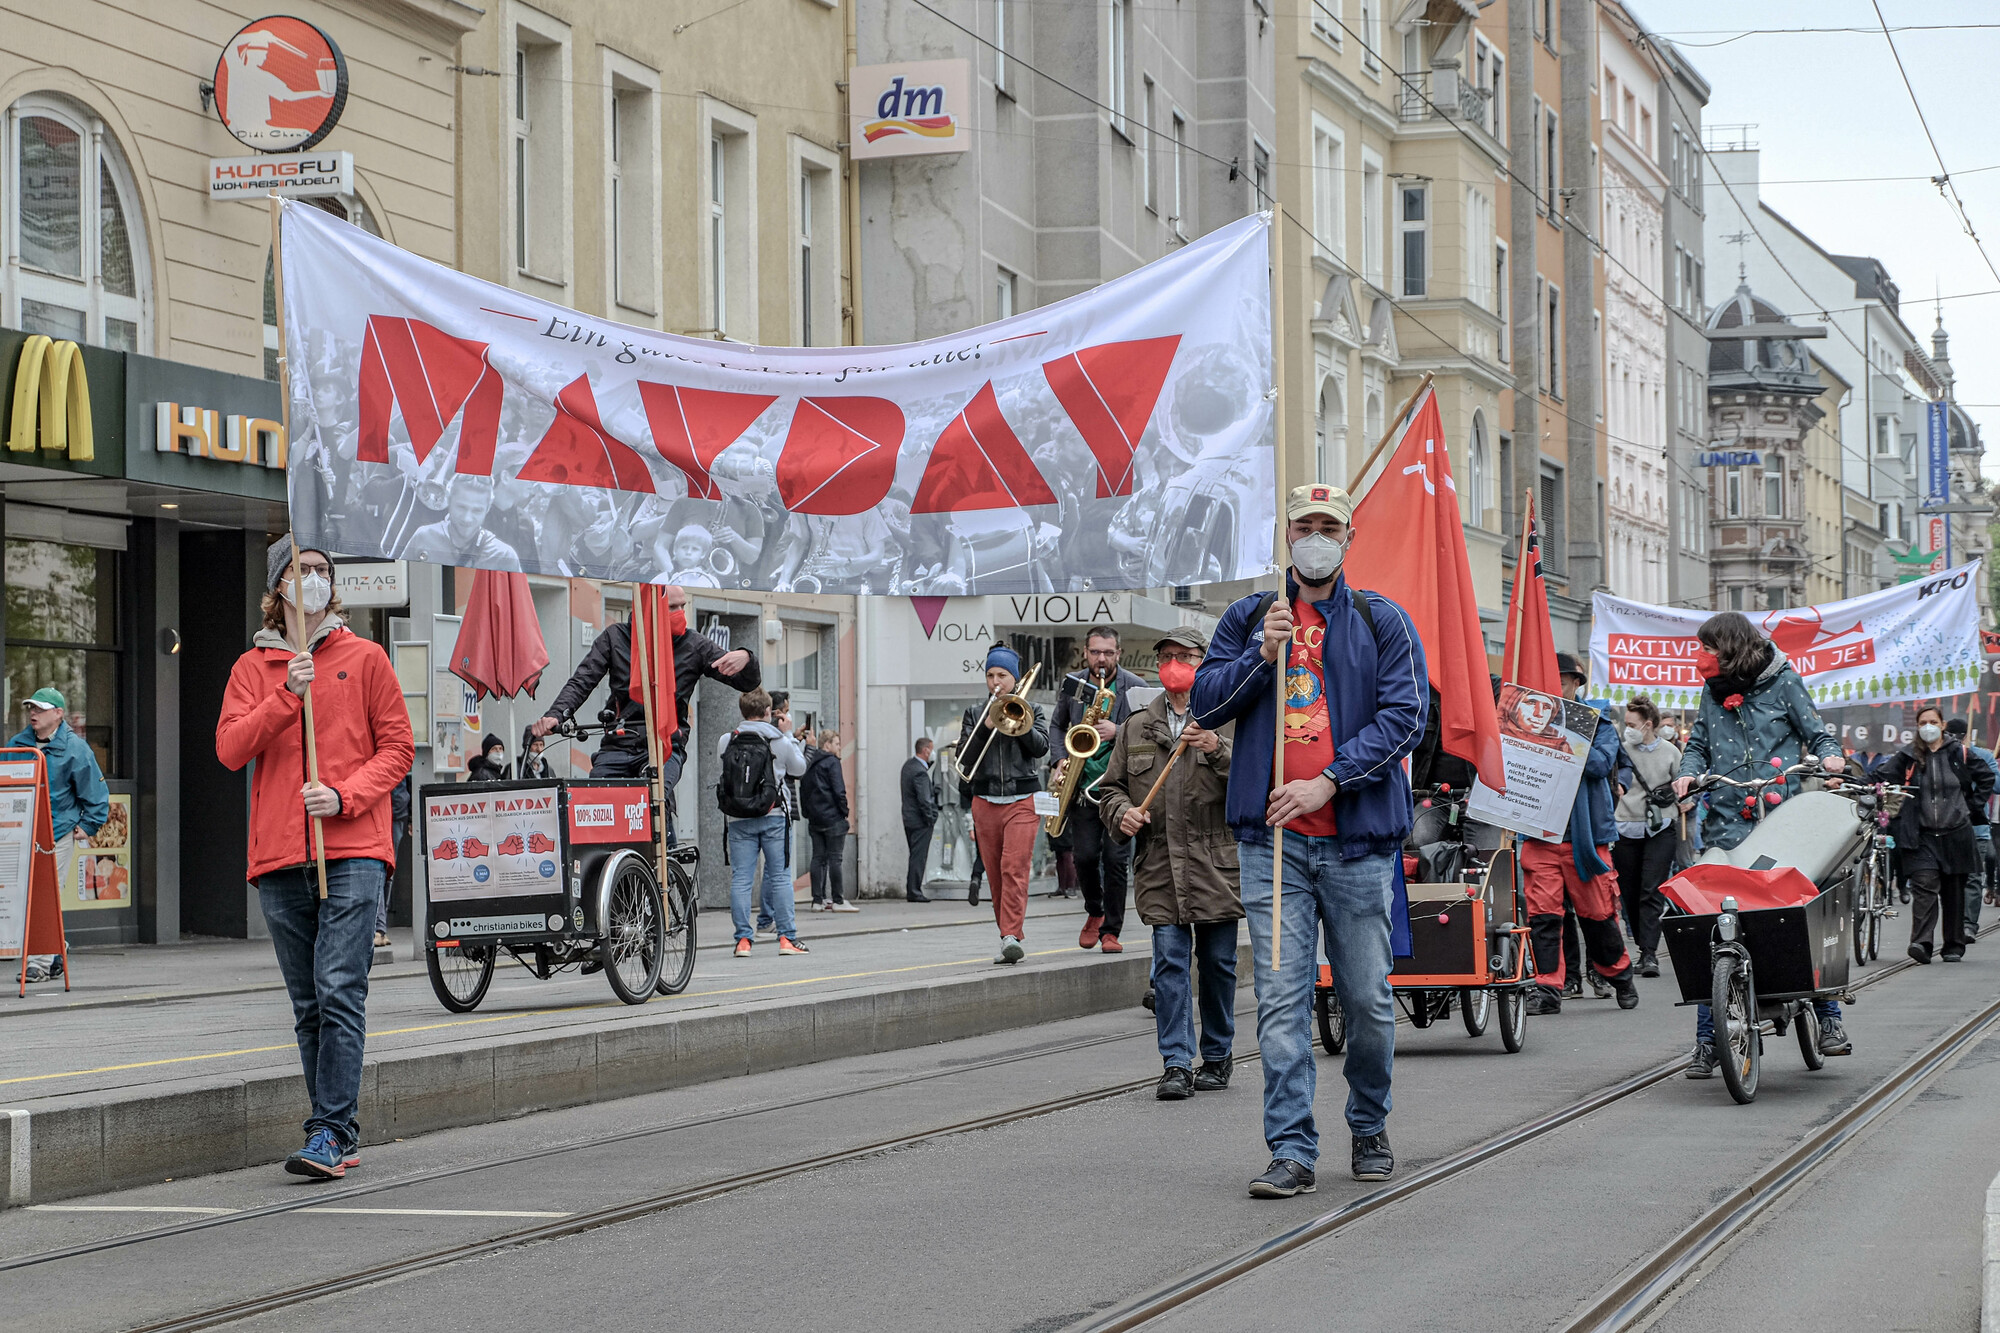 Mayday2021: Solidarisch aus der Krise!